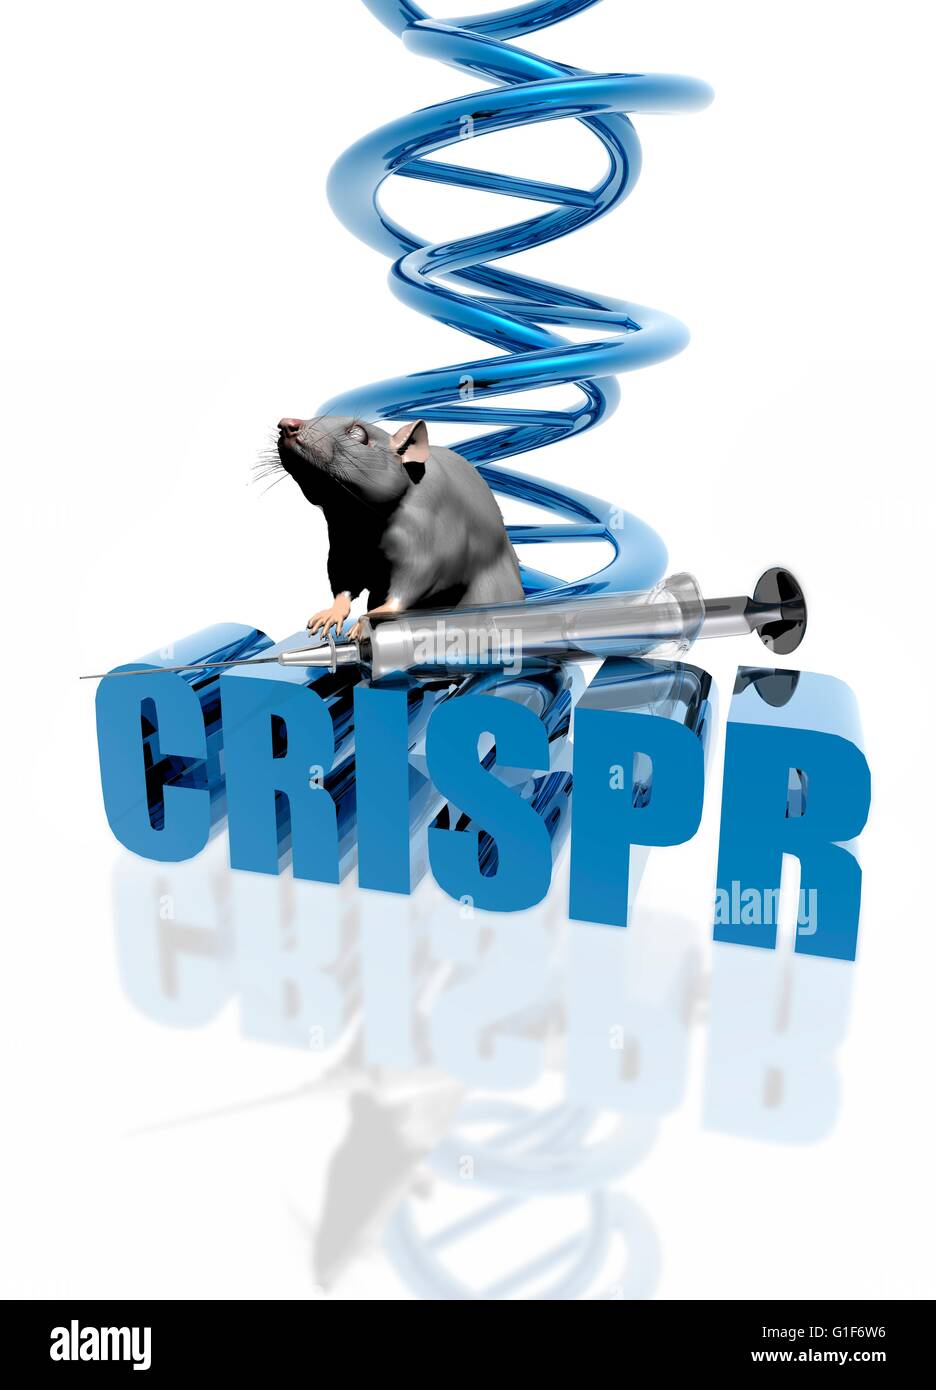 CRISPR gene editing, illustration. Stock Photo